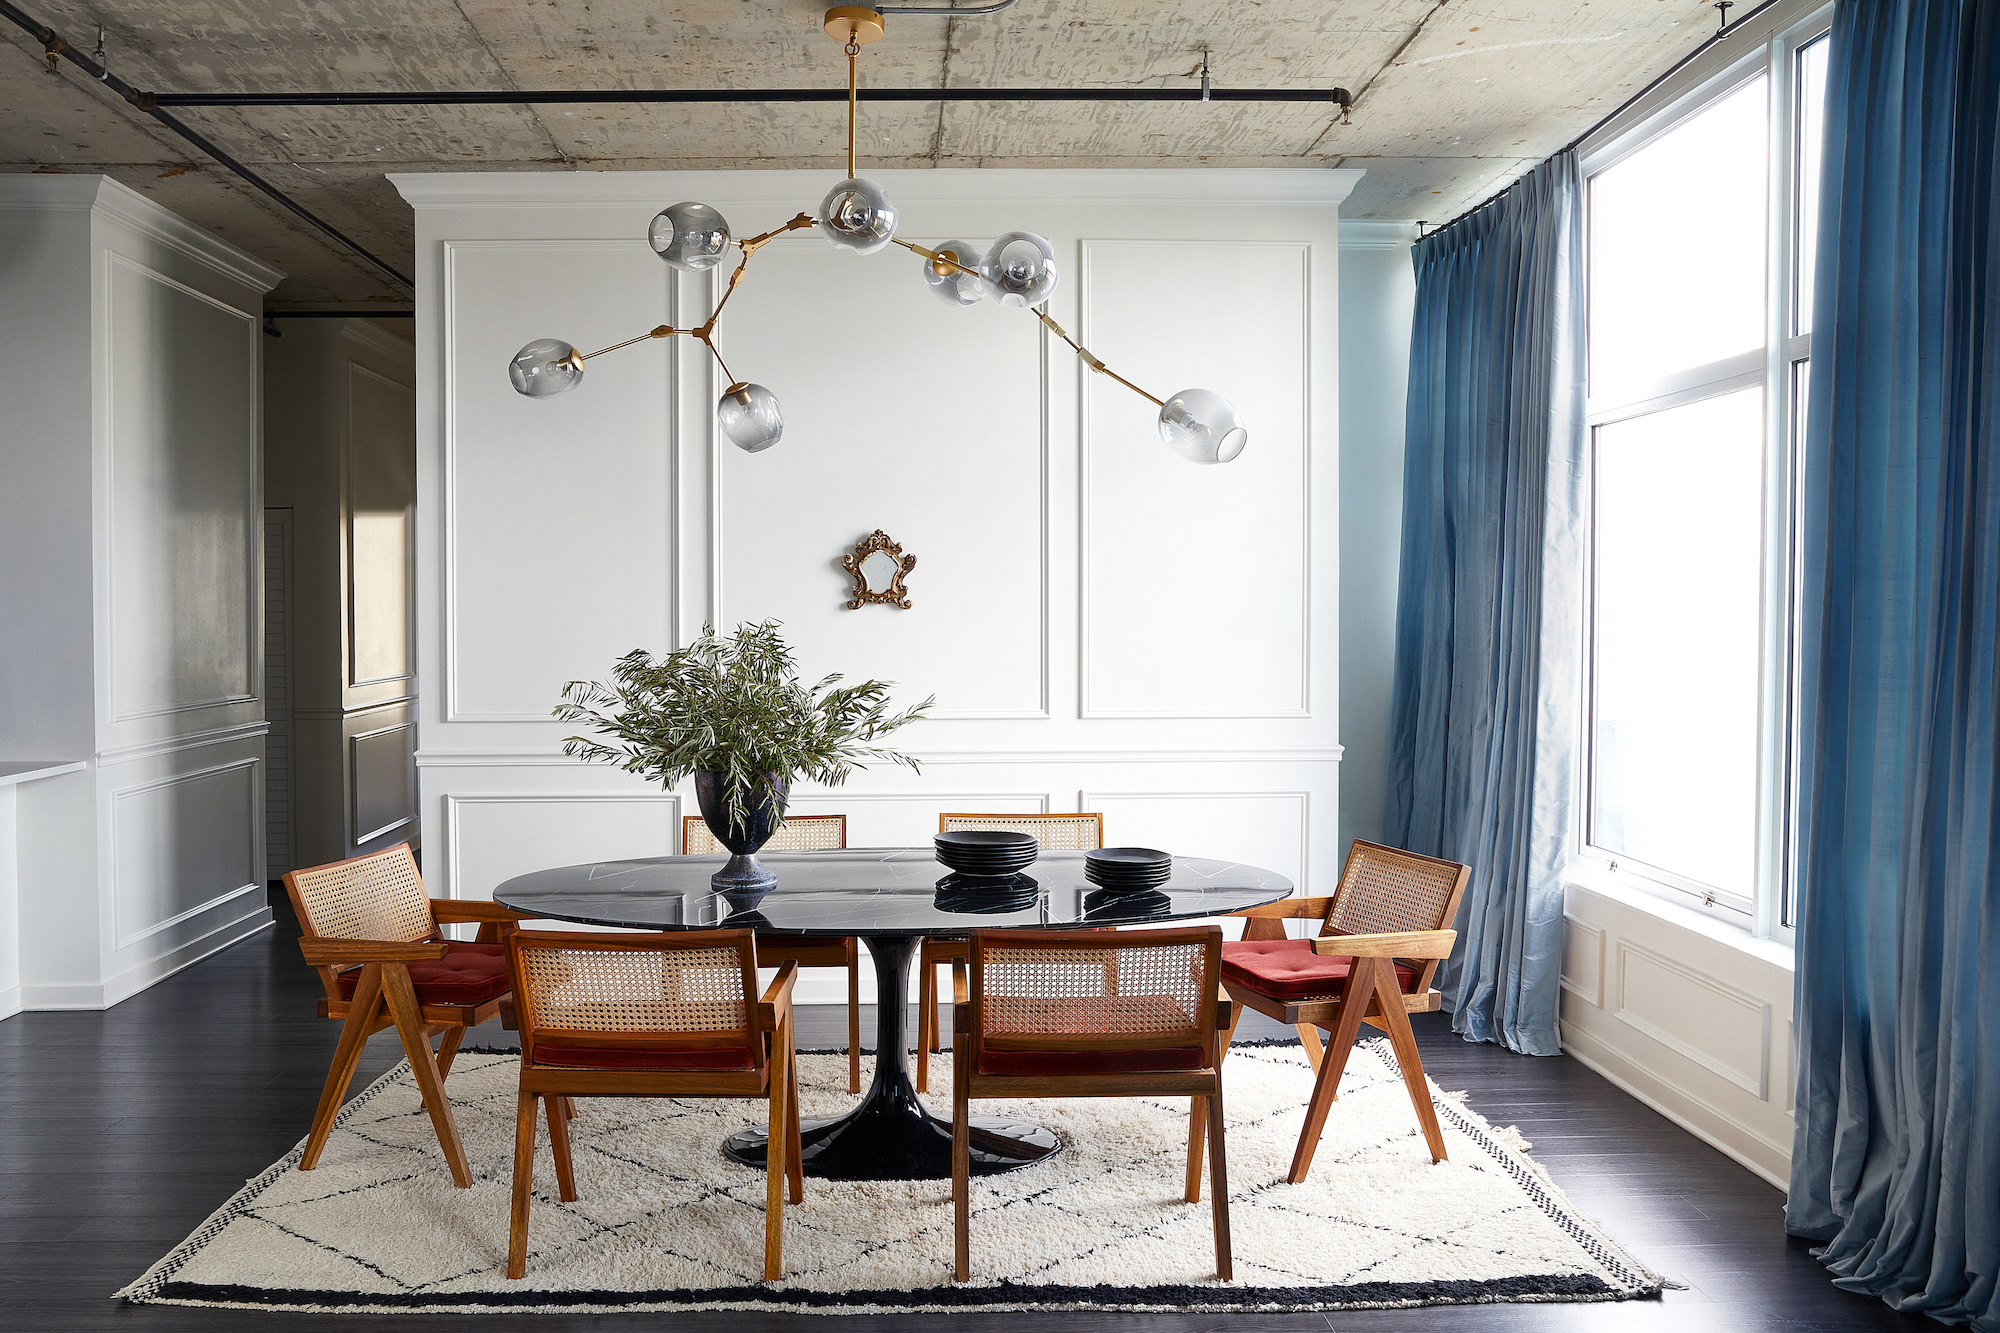 Pierre Jeanneret chairs around an Eero Saarinen table in a city apartment by interior designer Abir Salim – Effect Magazine